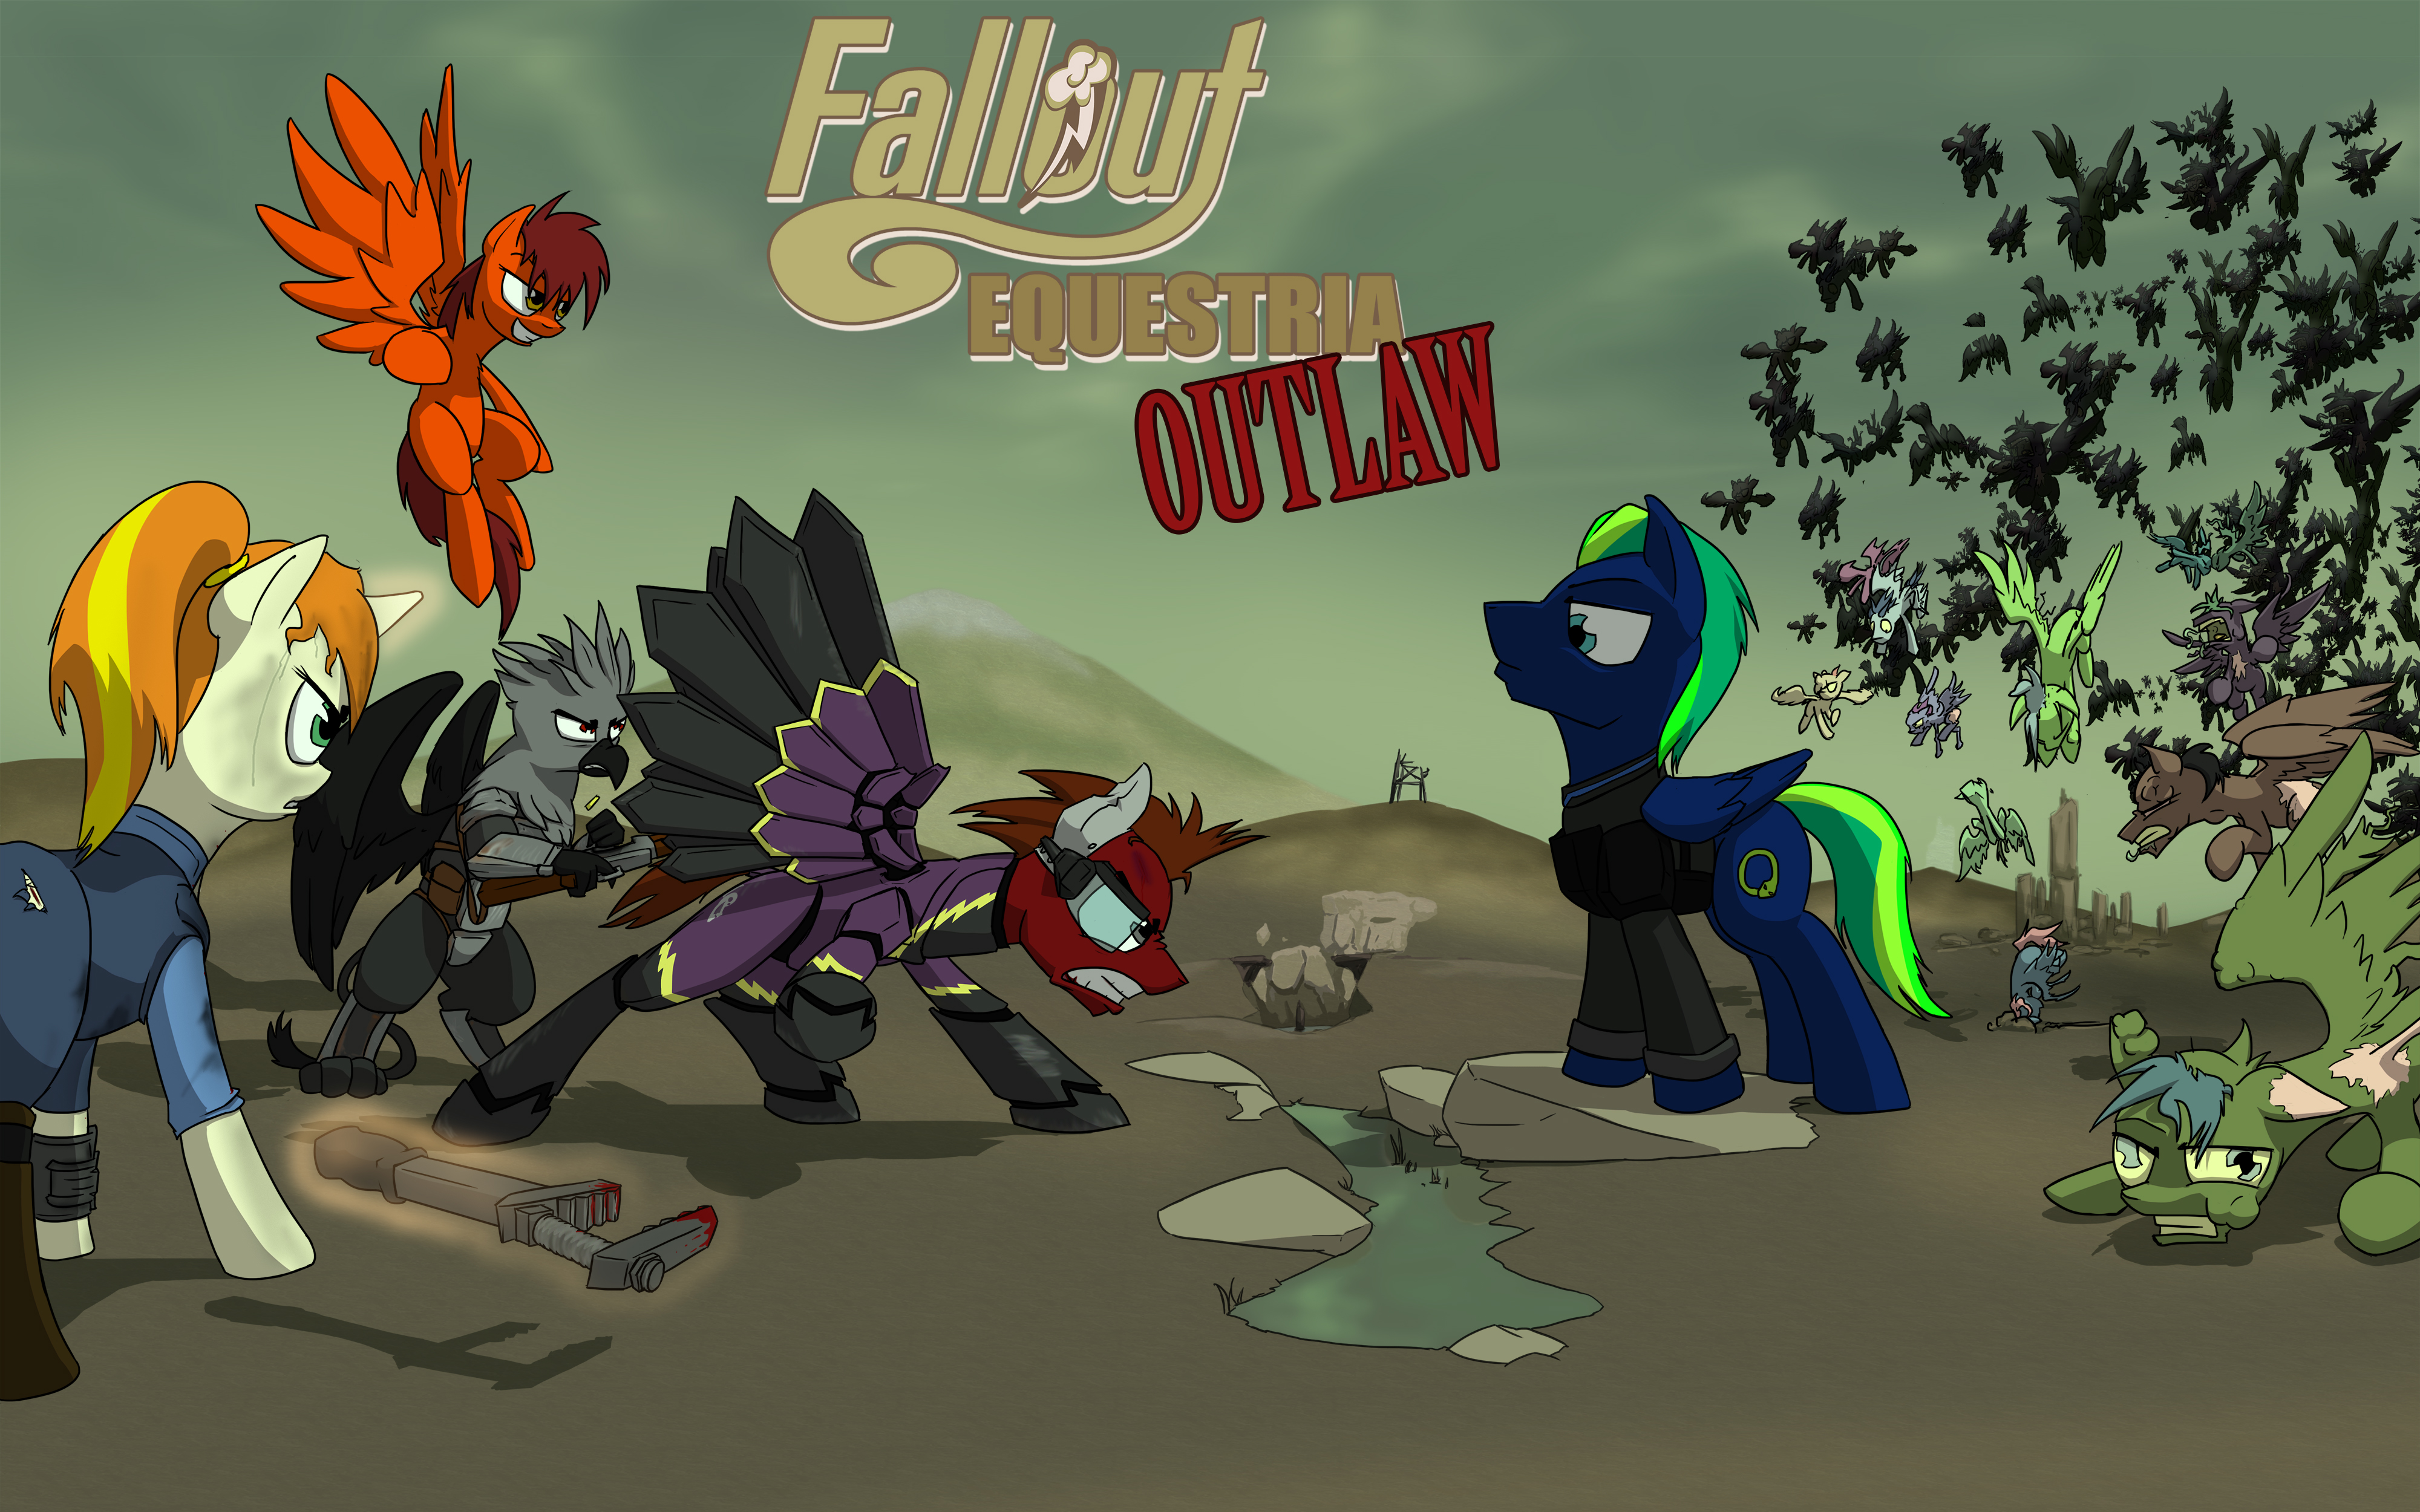 Fallout: Equestria - Wikipedia